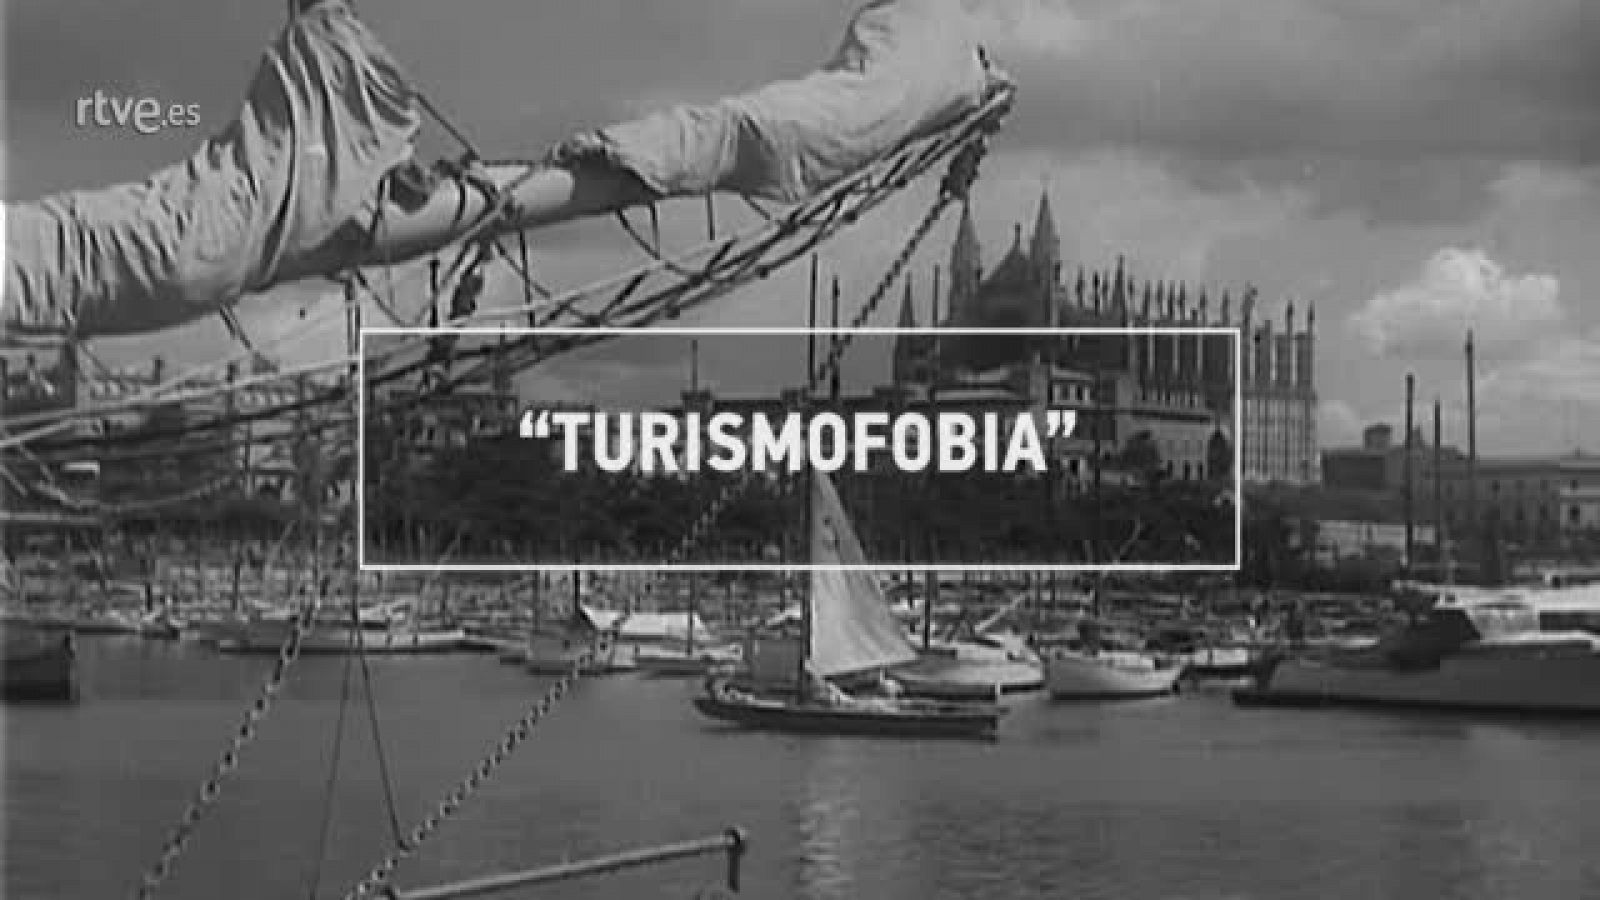 ¿Te acuerdas? | Turismofobia - RTVE.es